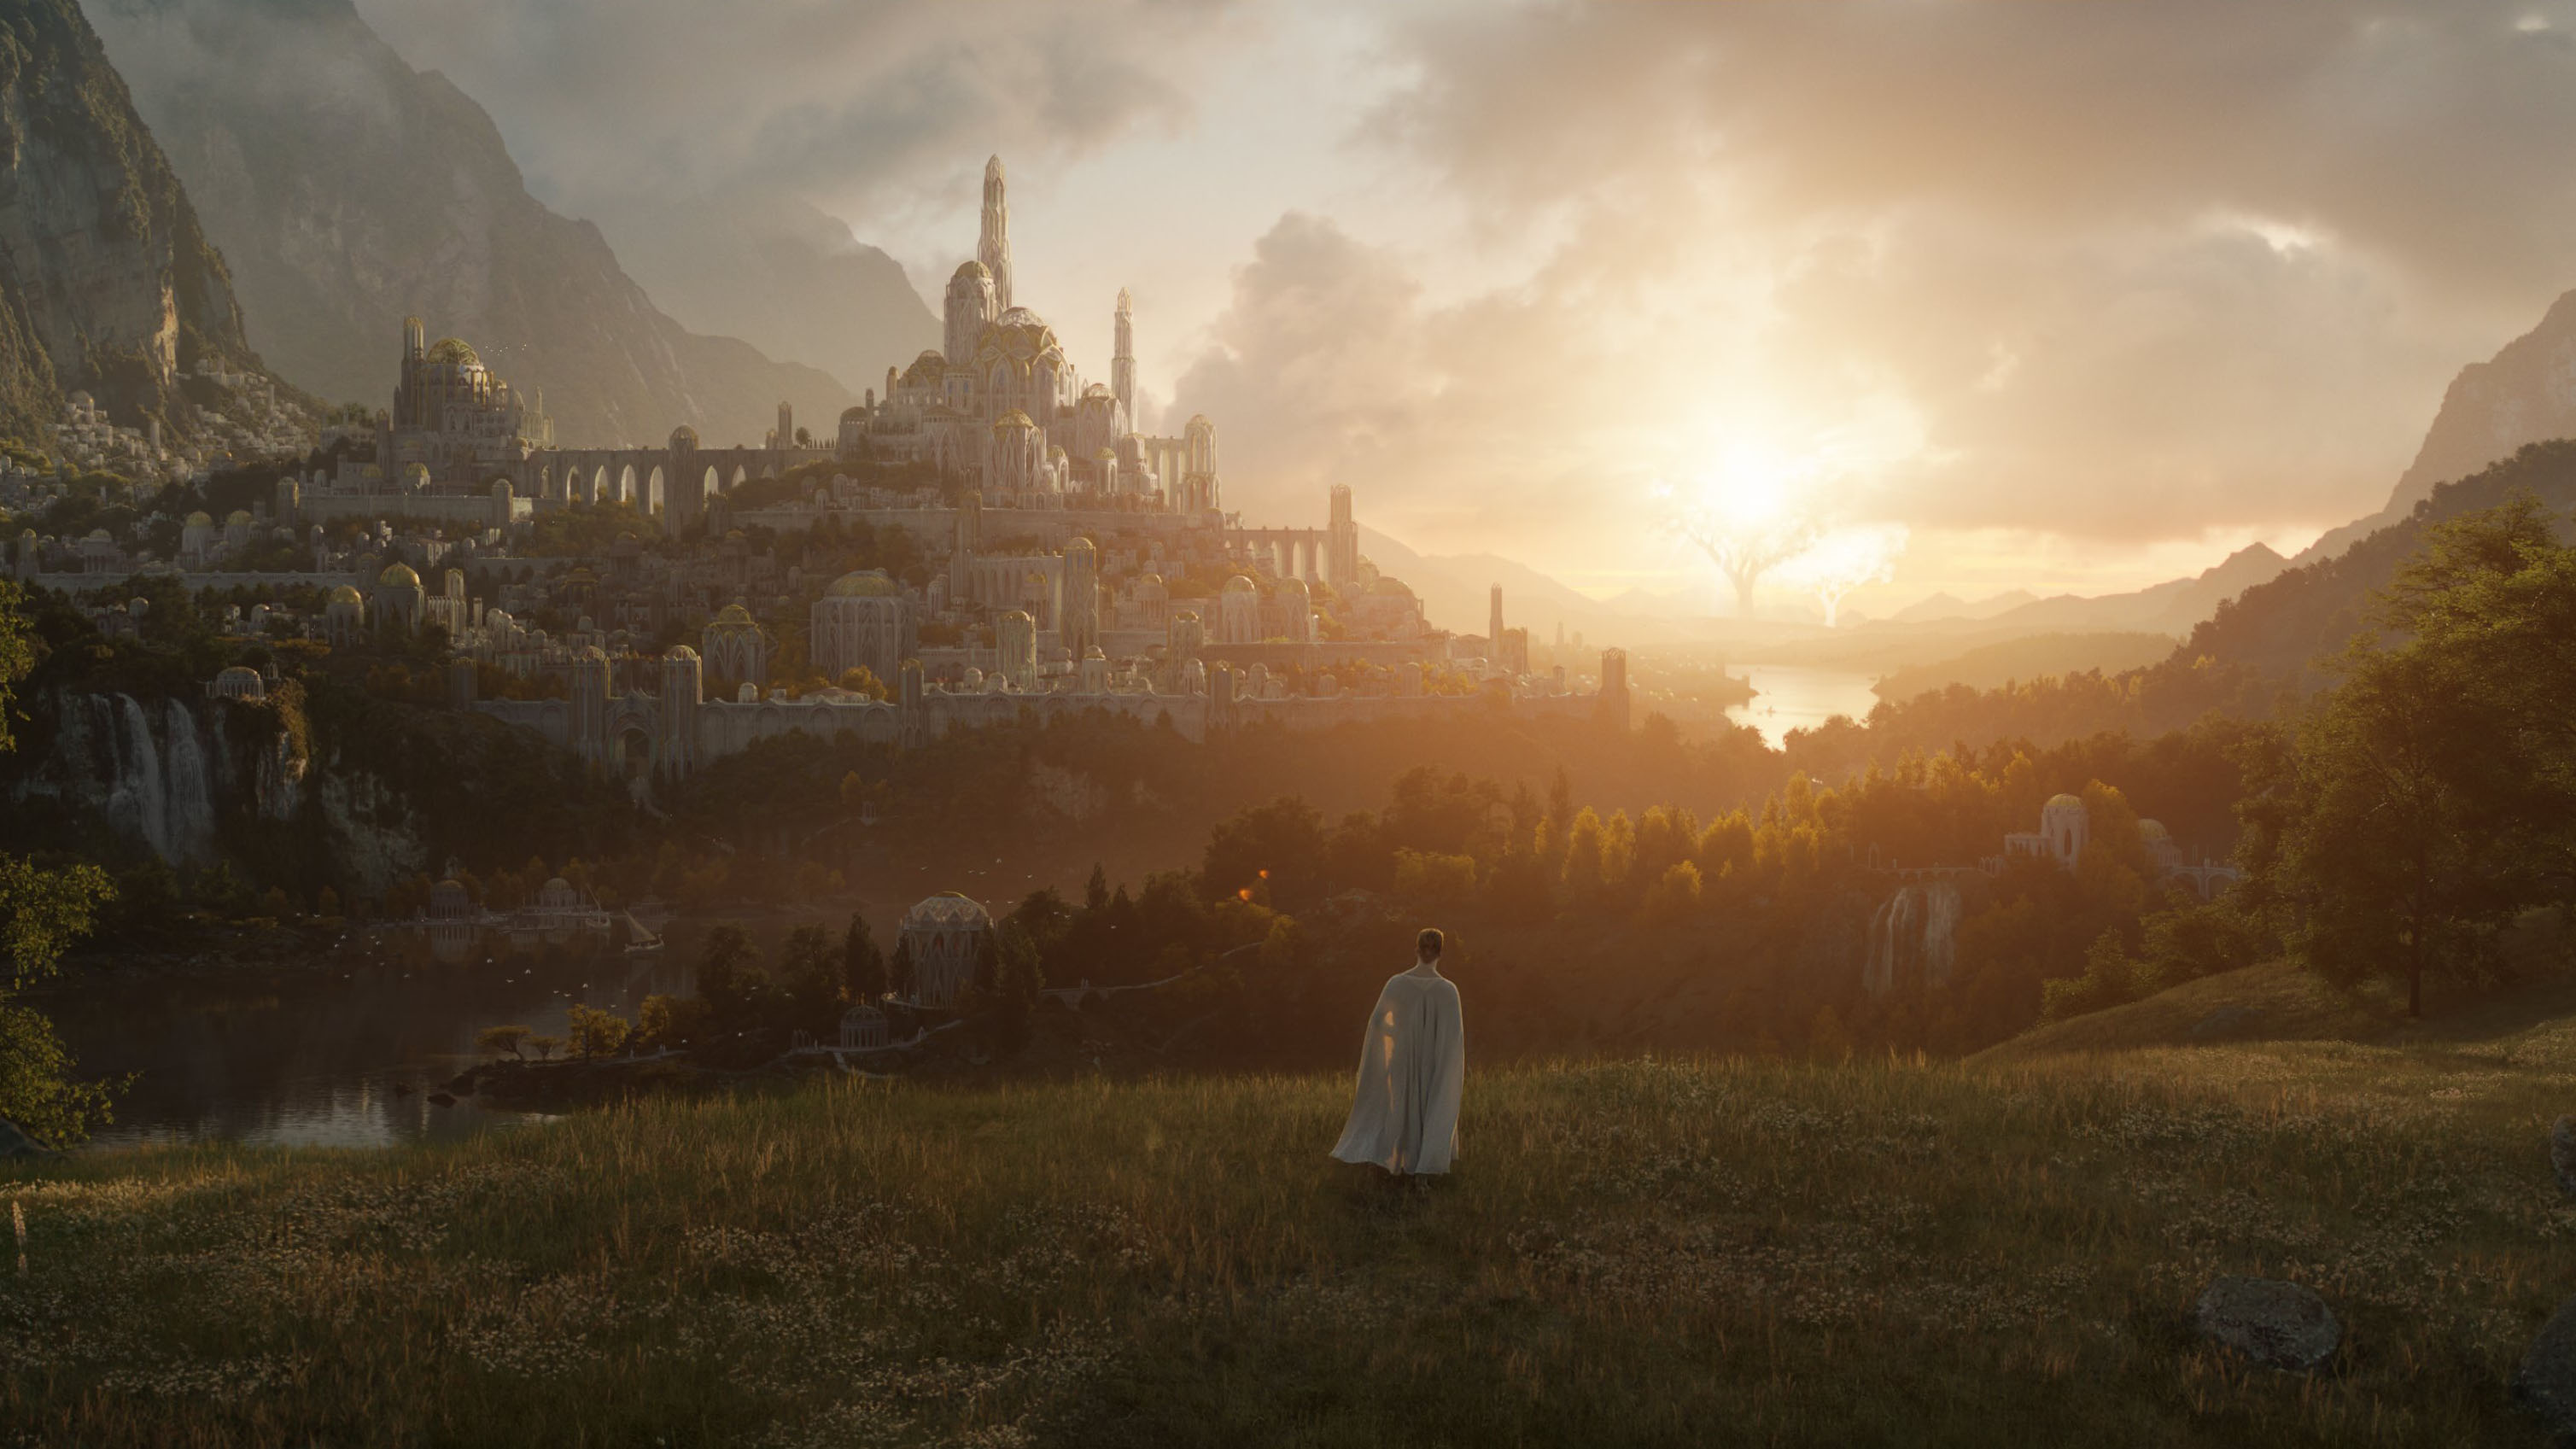 Gambar teaser Middle-earth dalam serial The Lord of the Rings dari Amazon Prime Video.